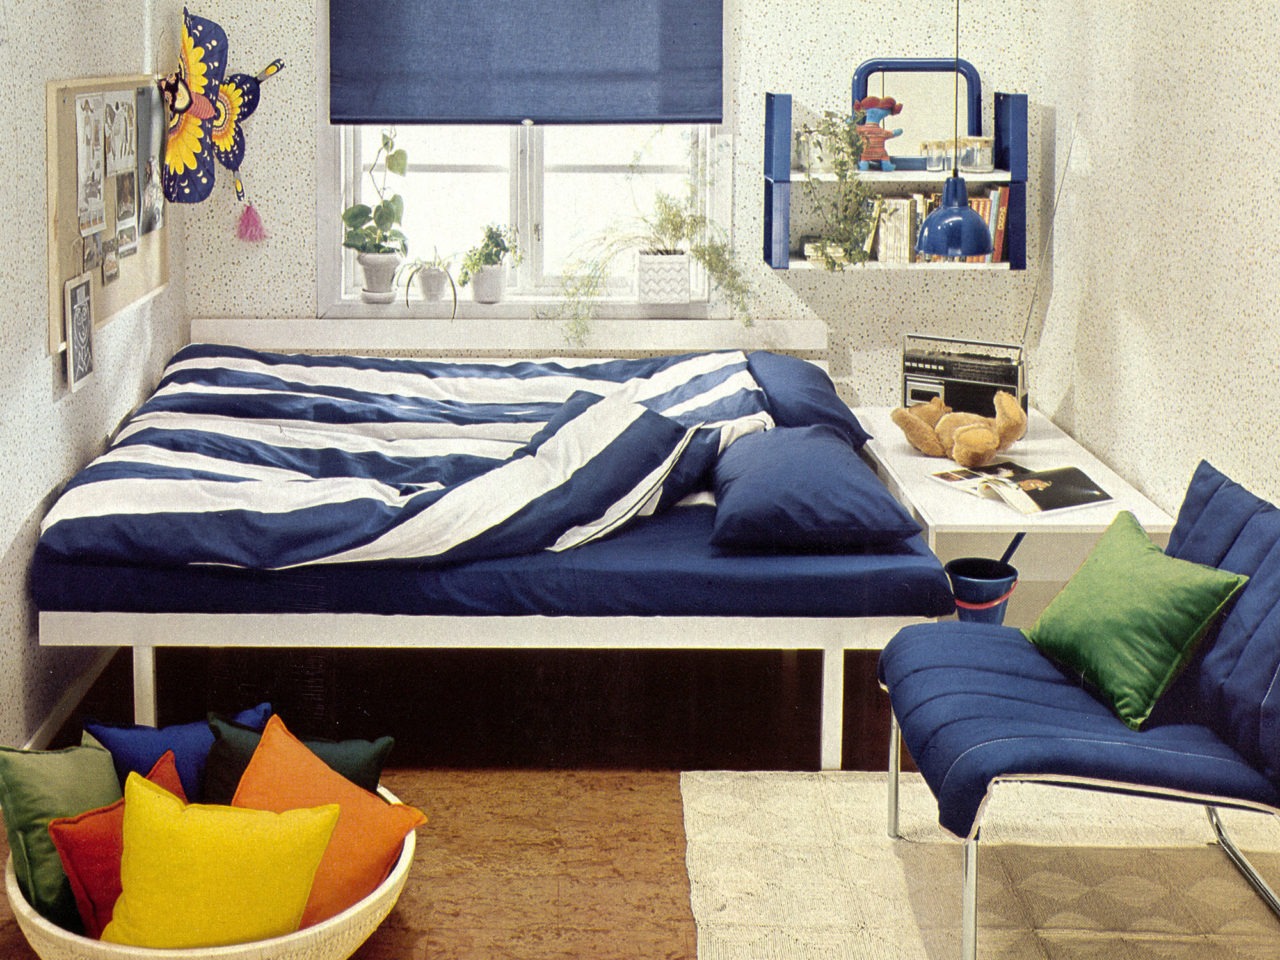 Heller Raum mit Korkboden und Pünktchenmuster an den Wänden. Blau-weiß gestreifte Bettwäsche. Blaue Details und Textilien.